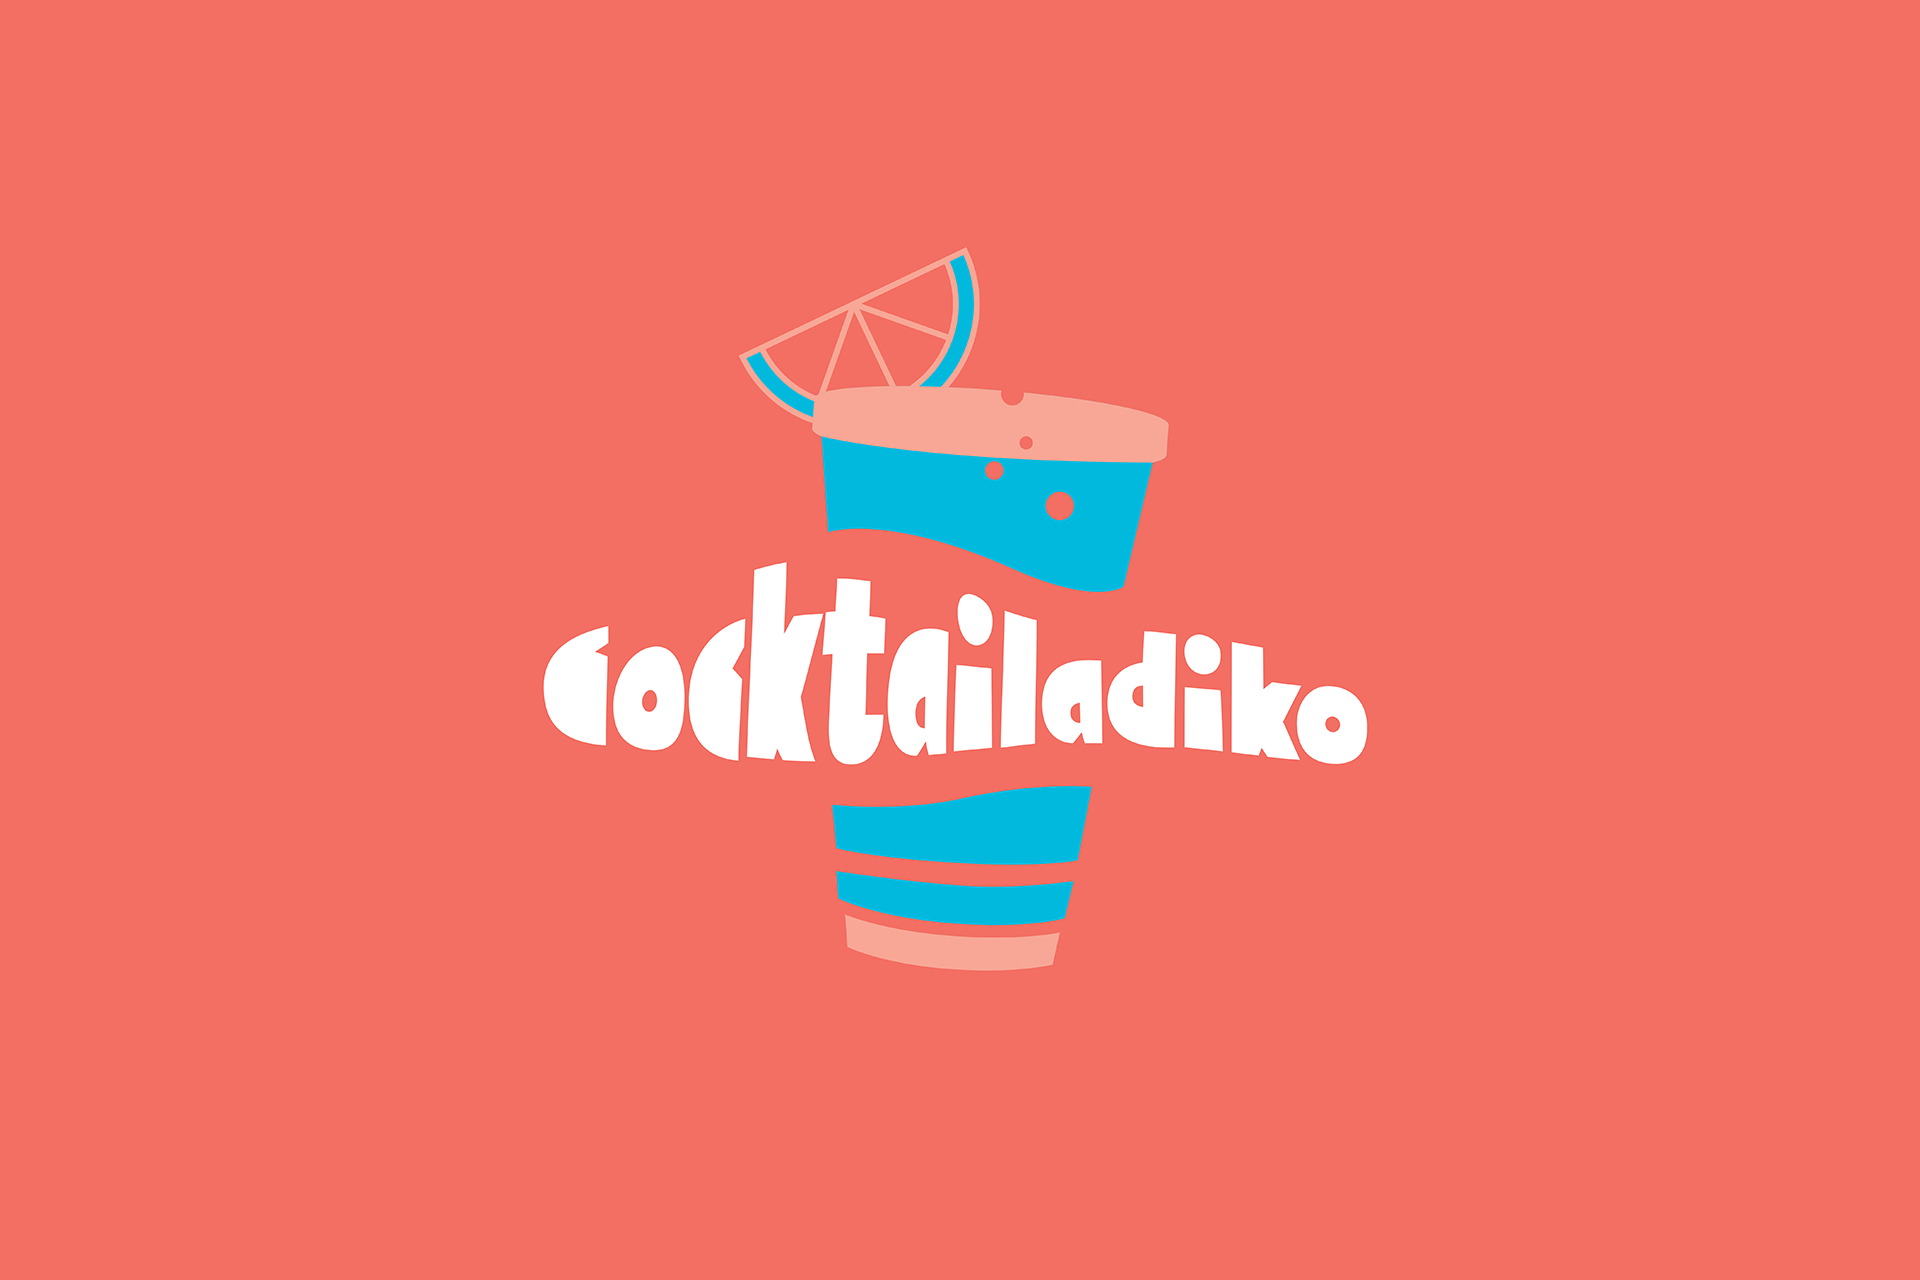 cocktailadiko